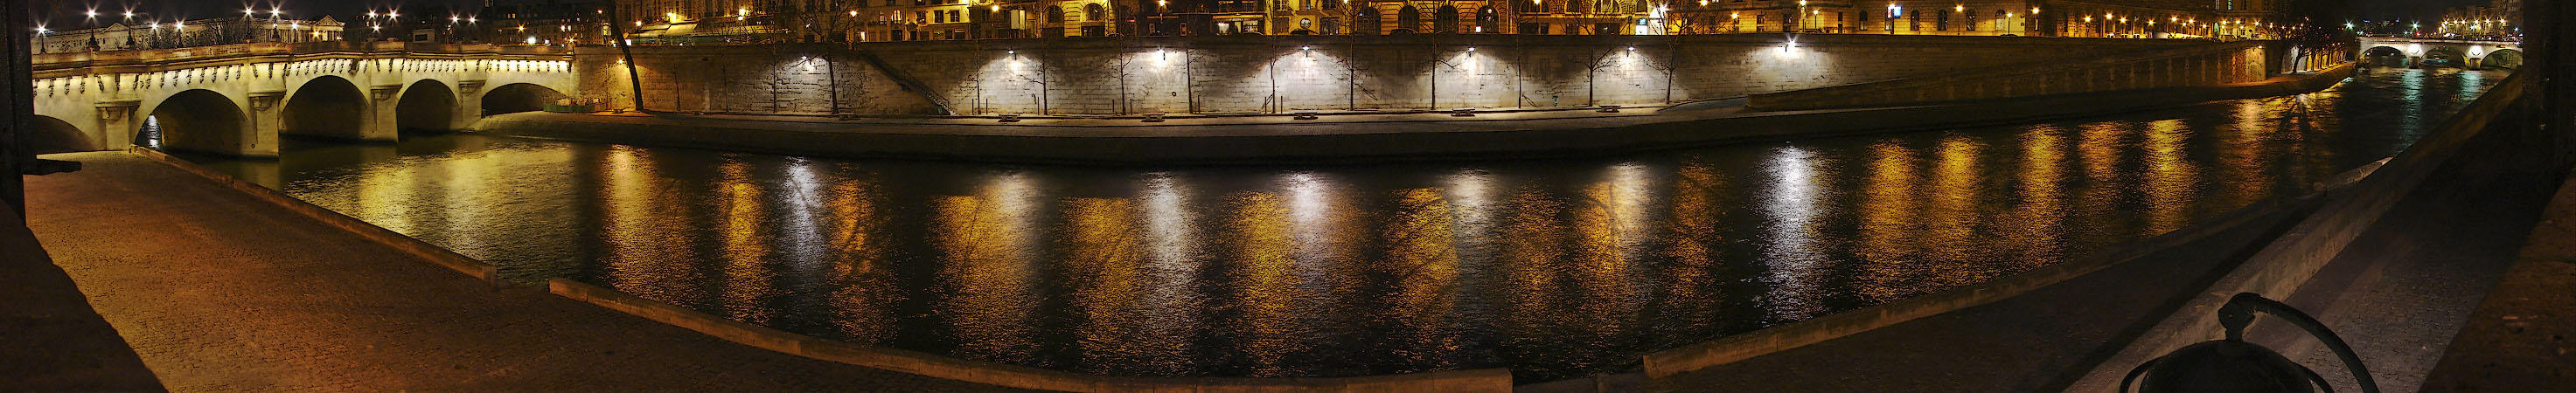 Quai des Orfèvres, Île de la Cité, pont Neuf and pont Saint-Michel seen from the Left Bank at night.